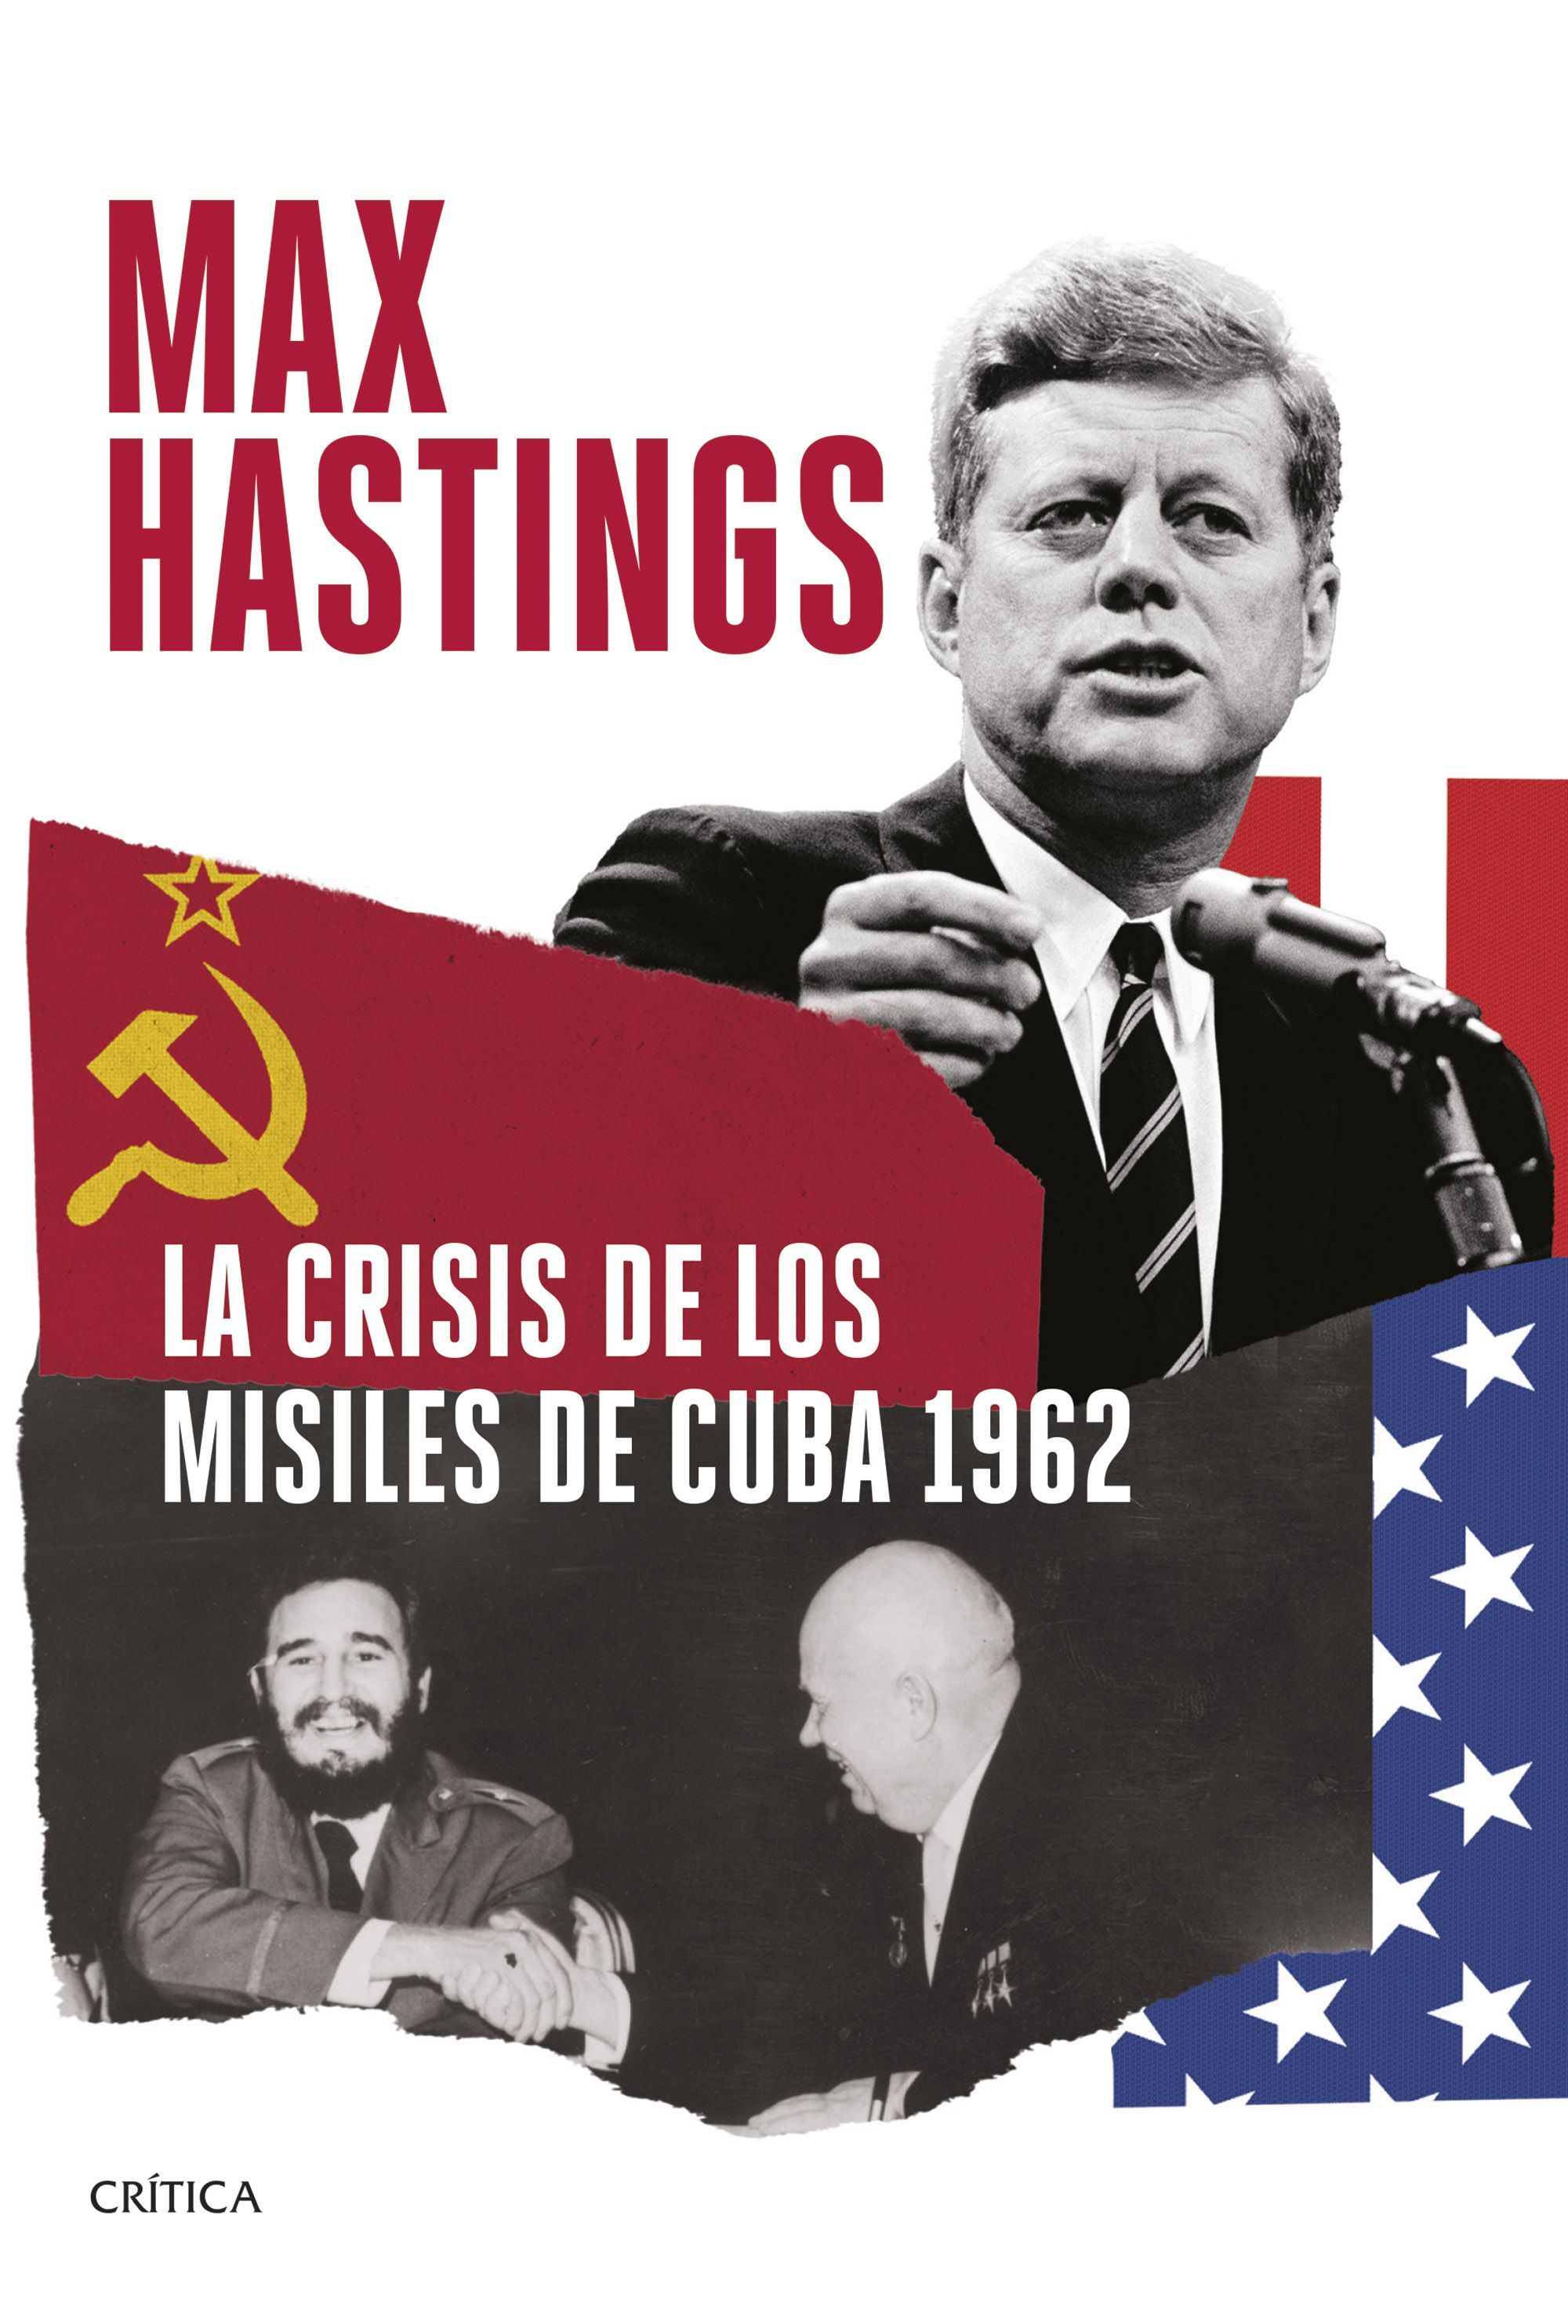 LA CRISIS DE LOS MISILES DE CUBA 1962